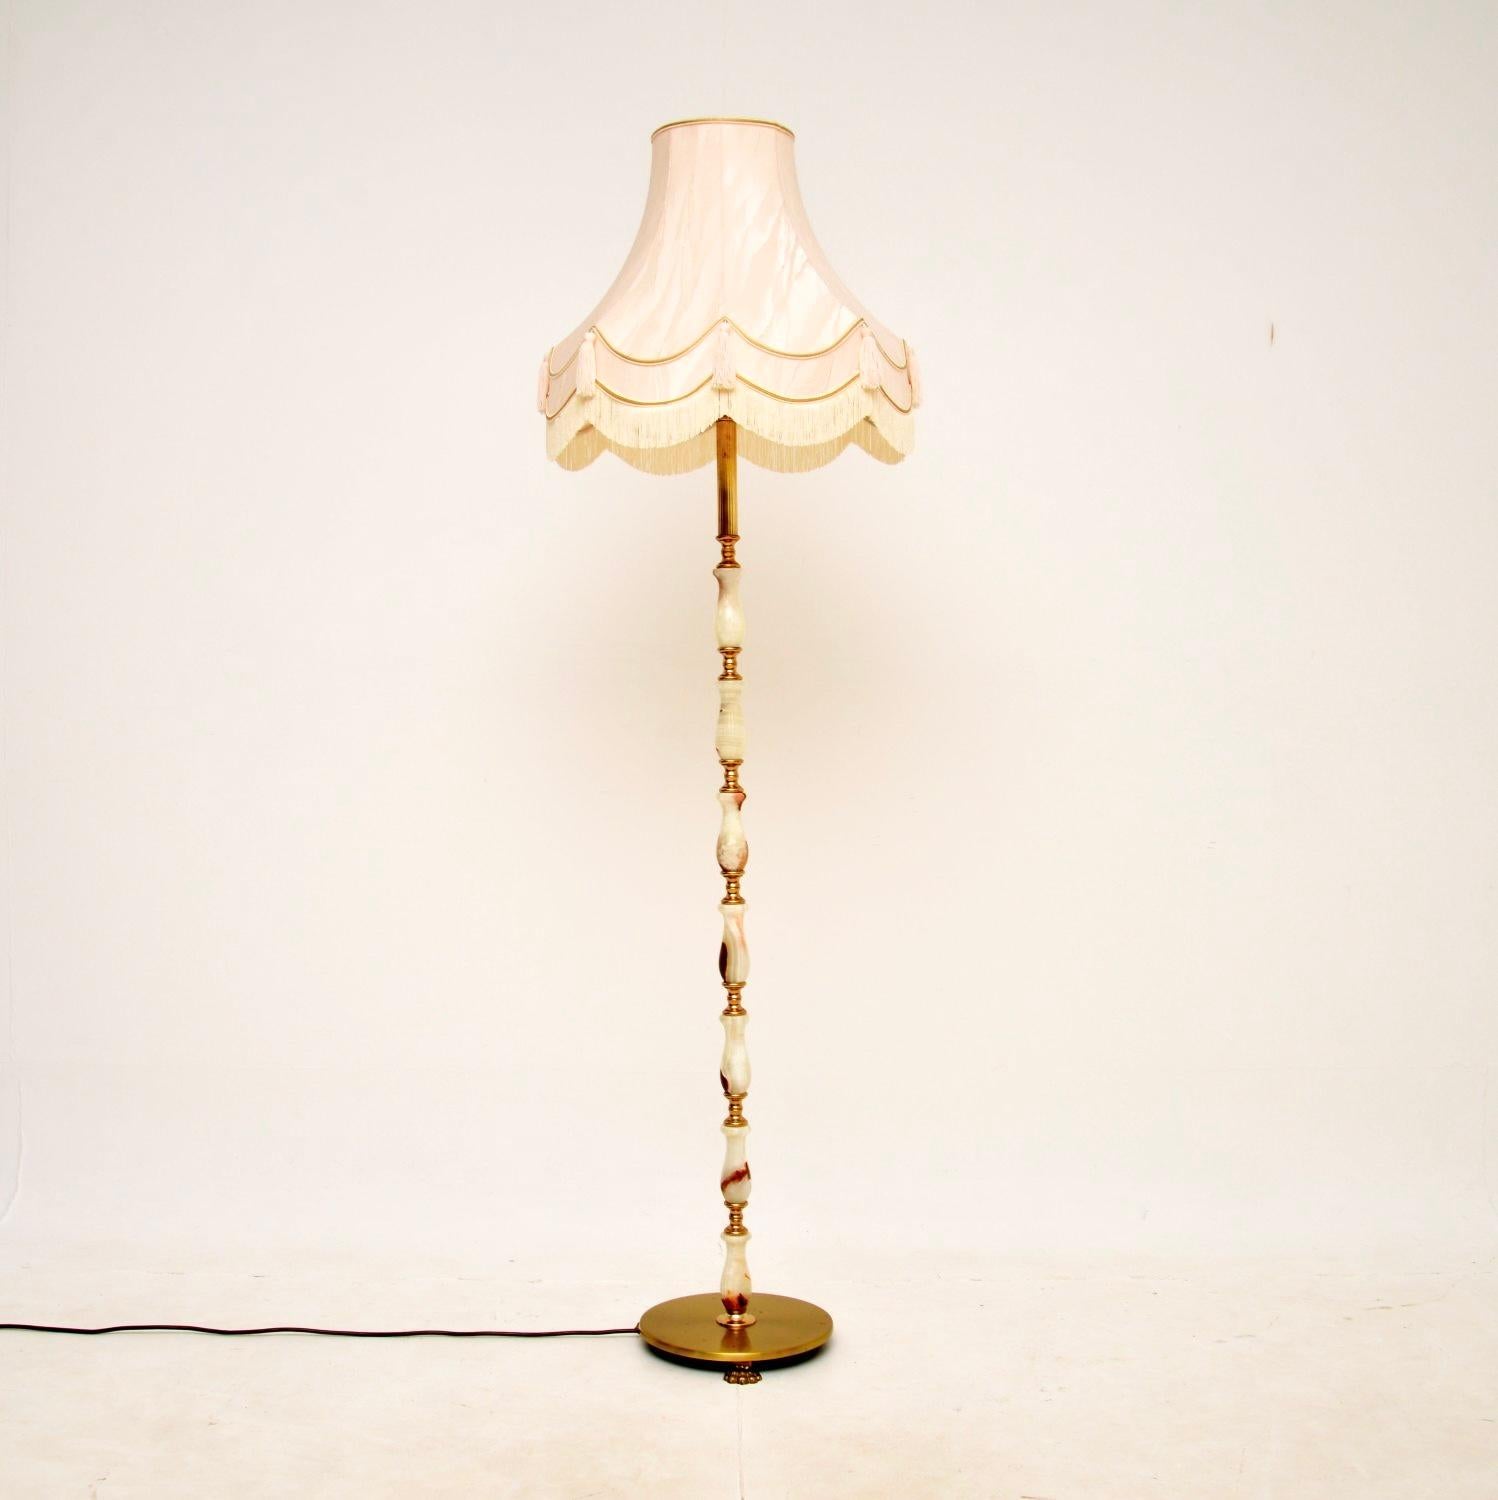 Magnifique lampadaire français ancien en onyx et laiton. Fabriqué en France, il date des années 1930.

Il est d'une qualité exceptionnelle, le socle est articulé en onyx massif et en laiton, et repose sur une base en laiton avec des pieds en forme